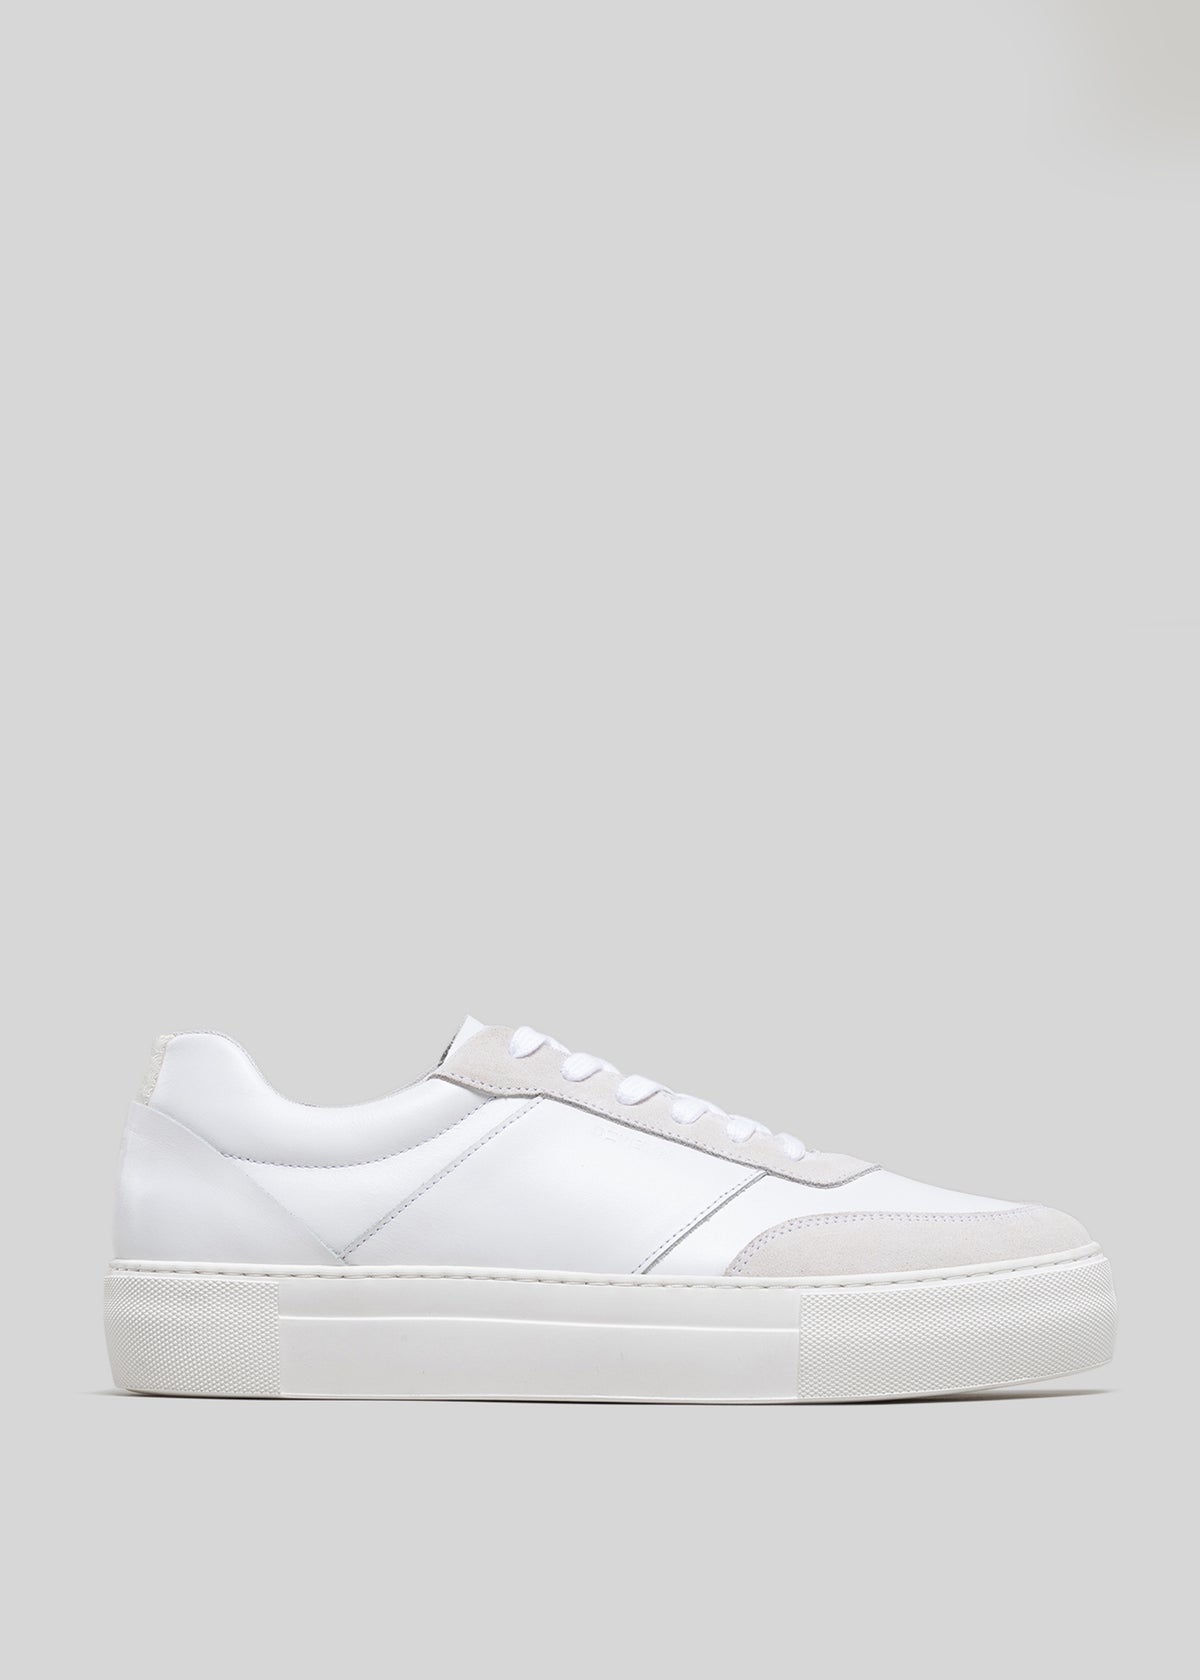 Vue latérale d'une Start with a White Canvas, low-top sneaker avec une semelle plate et des lacets blancs sur un fond gris.